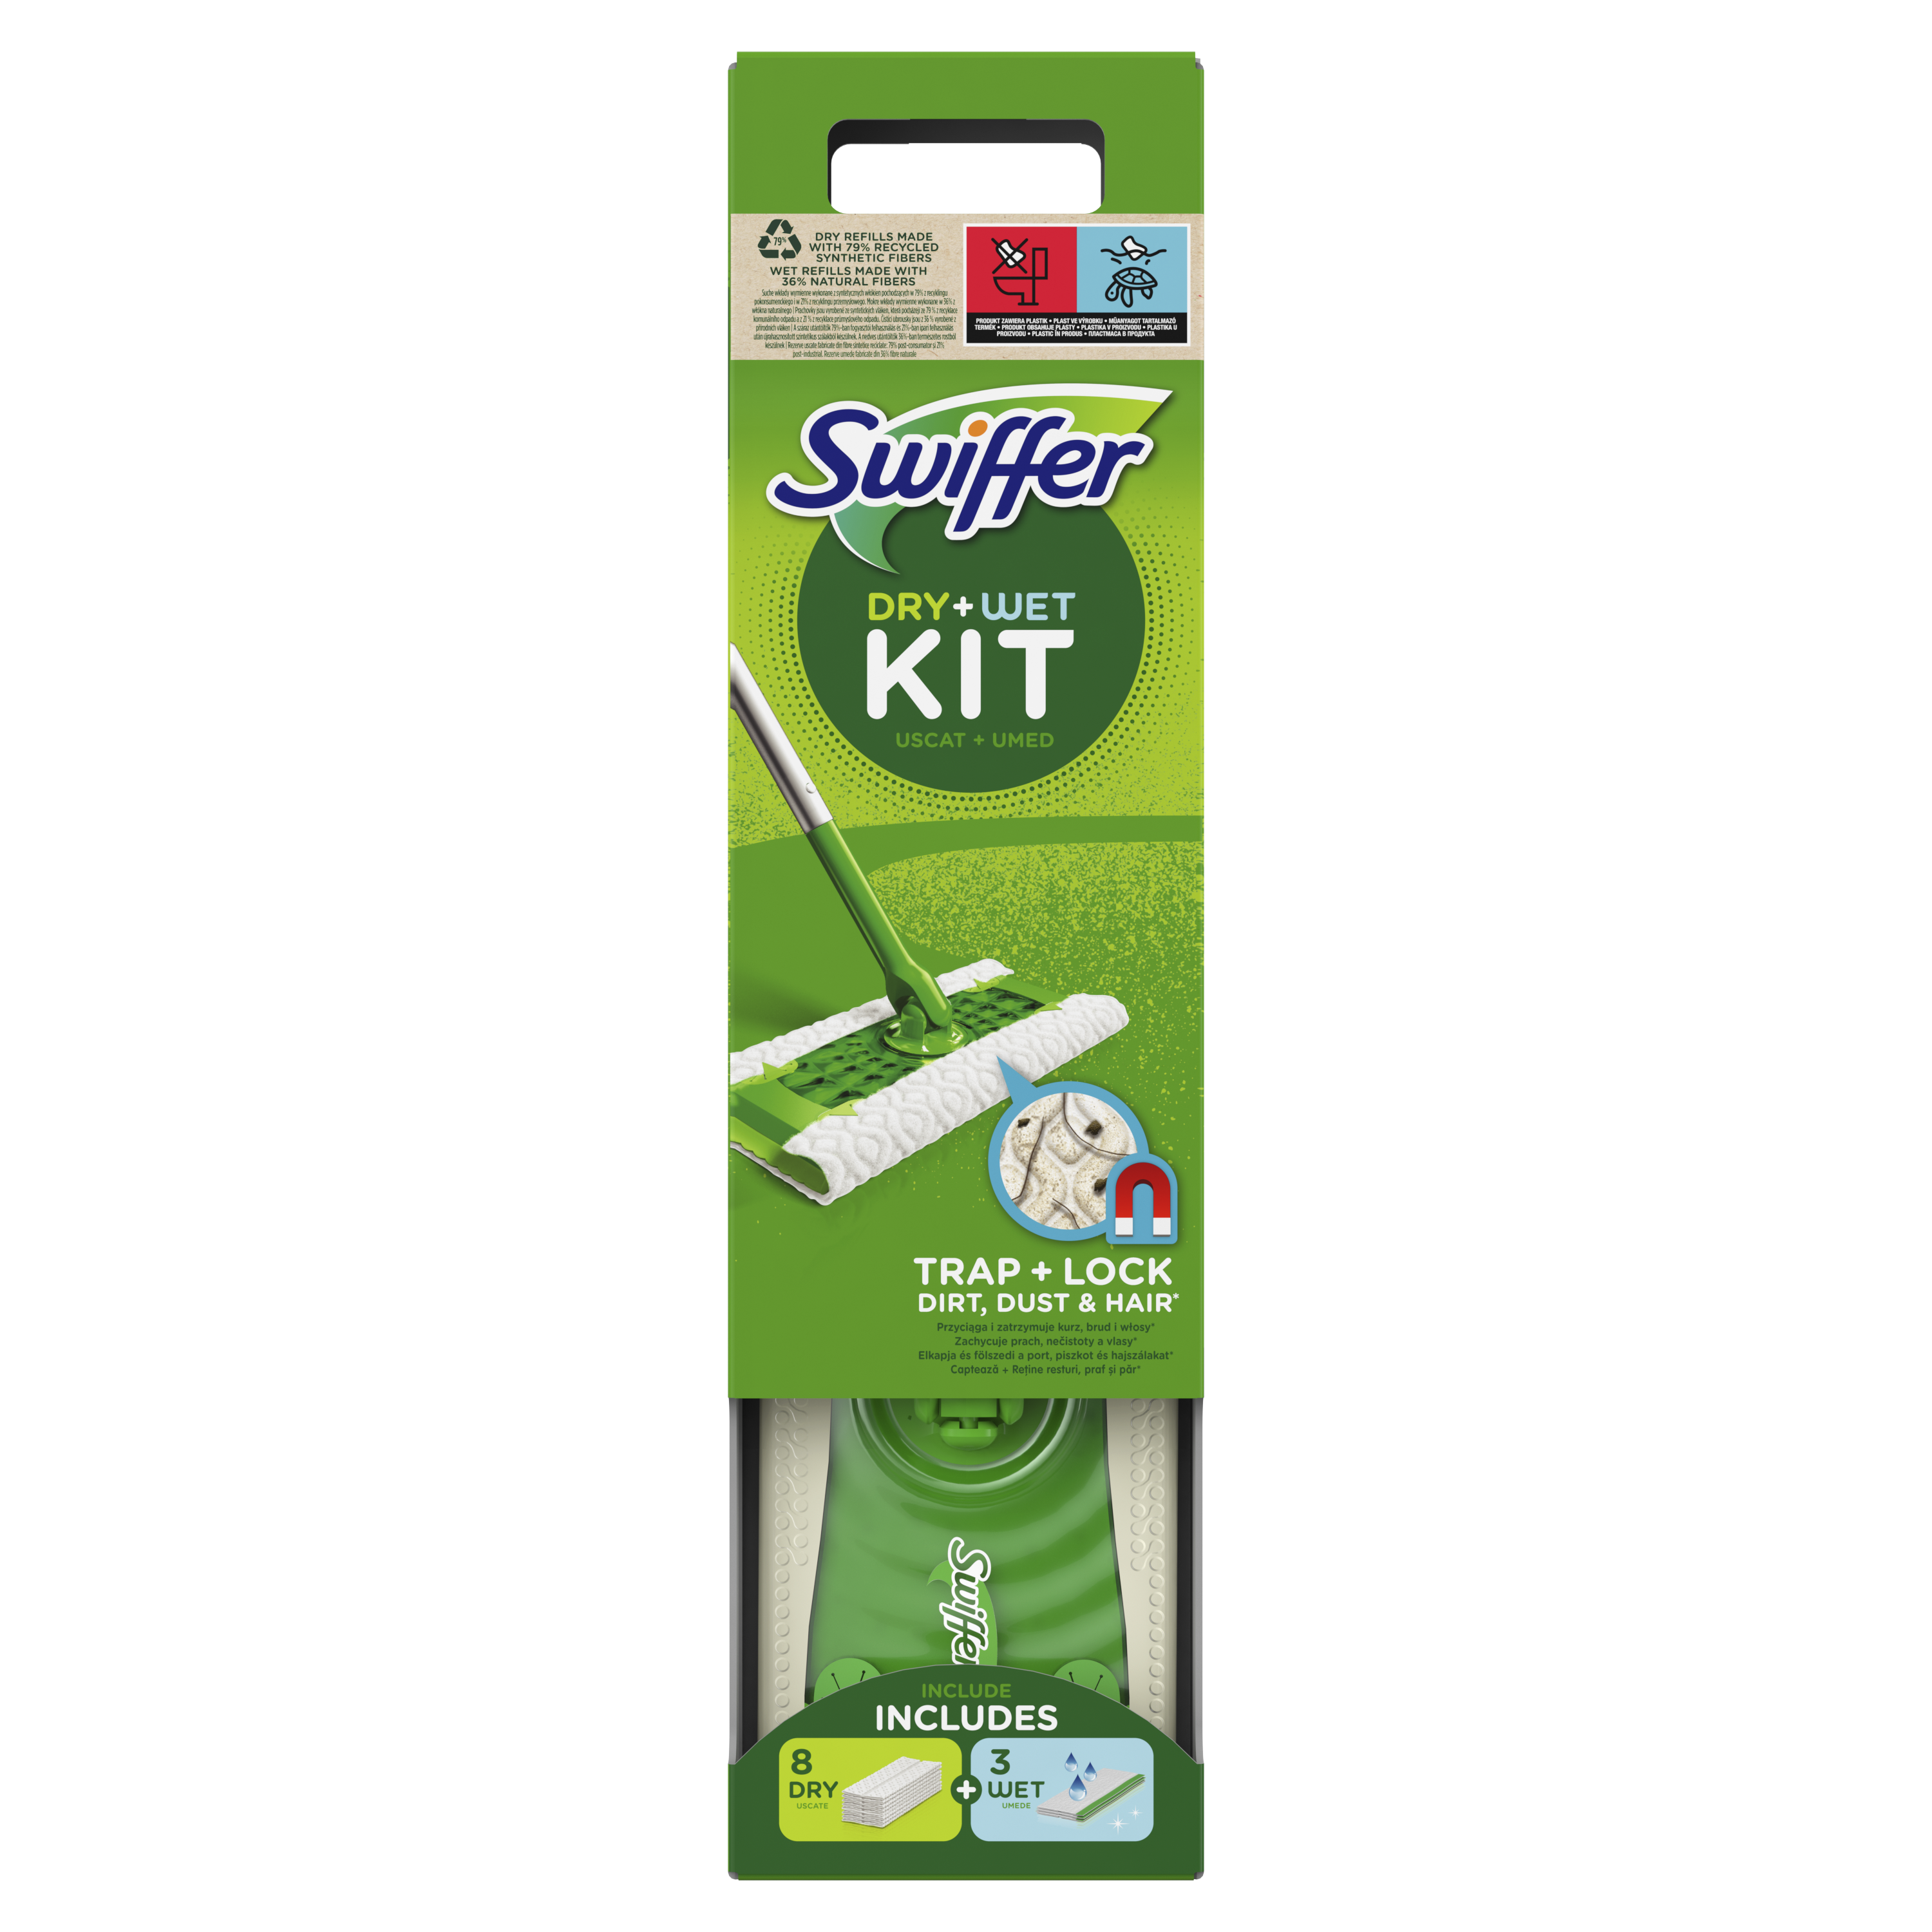 Omelo Swiffer Dry+Wet Kit